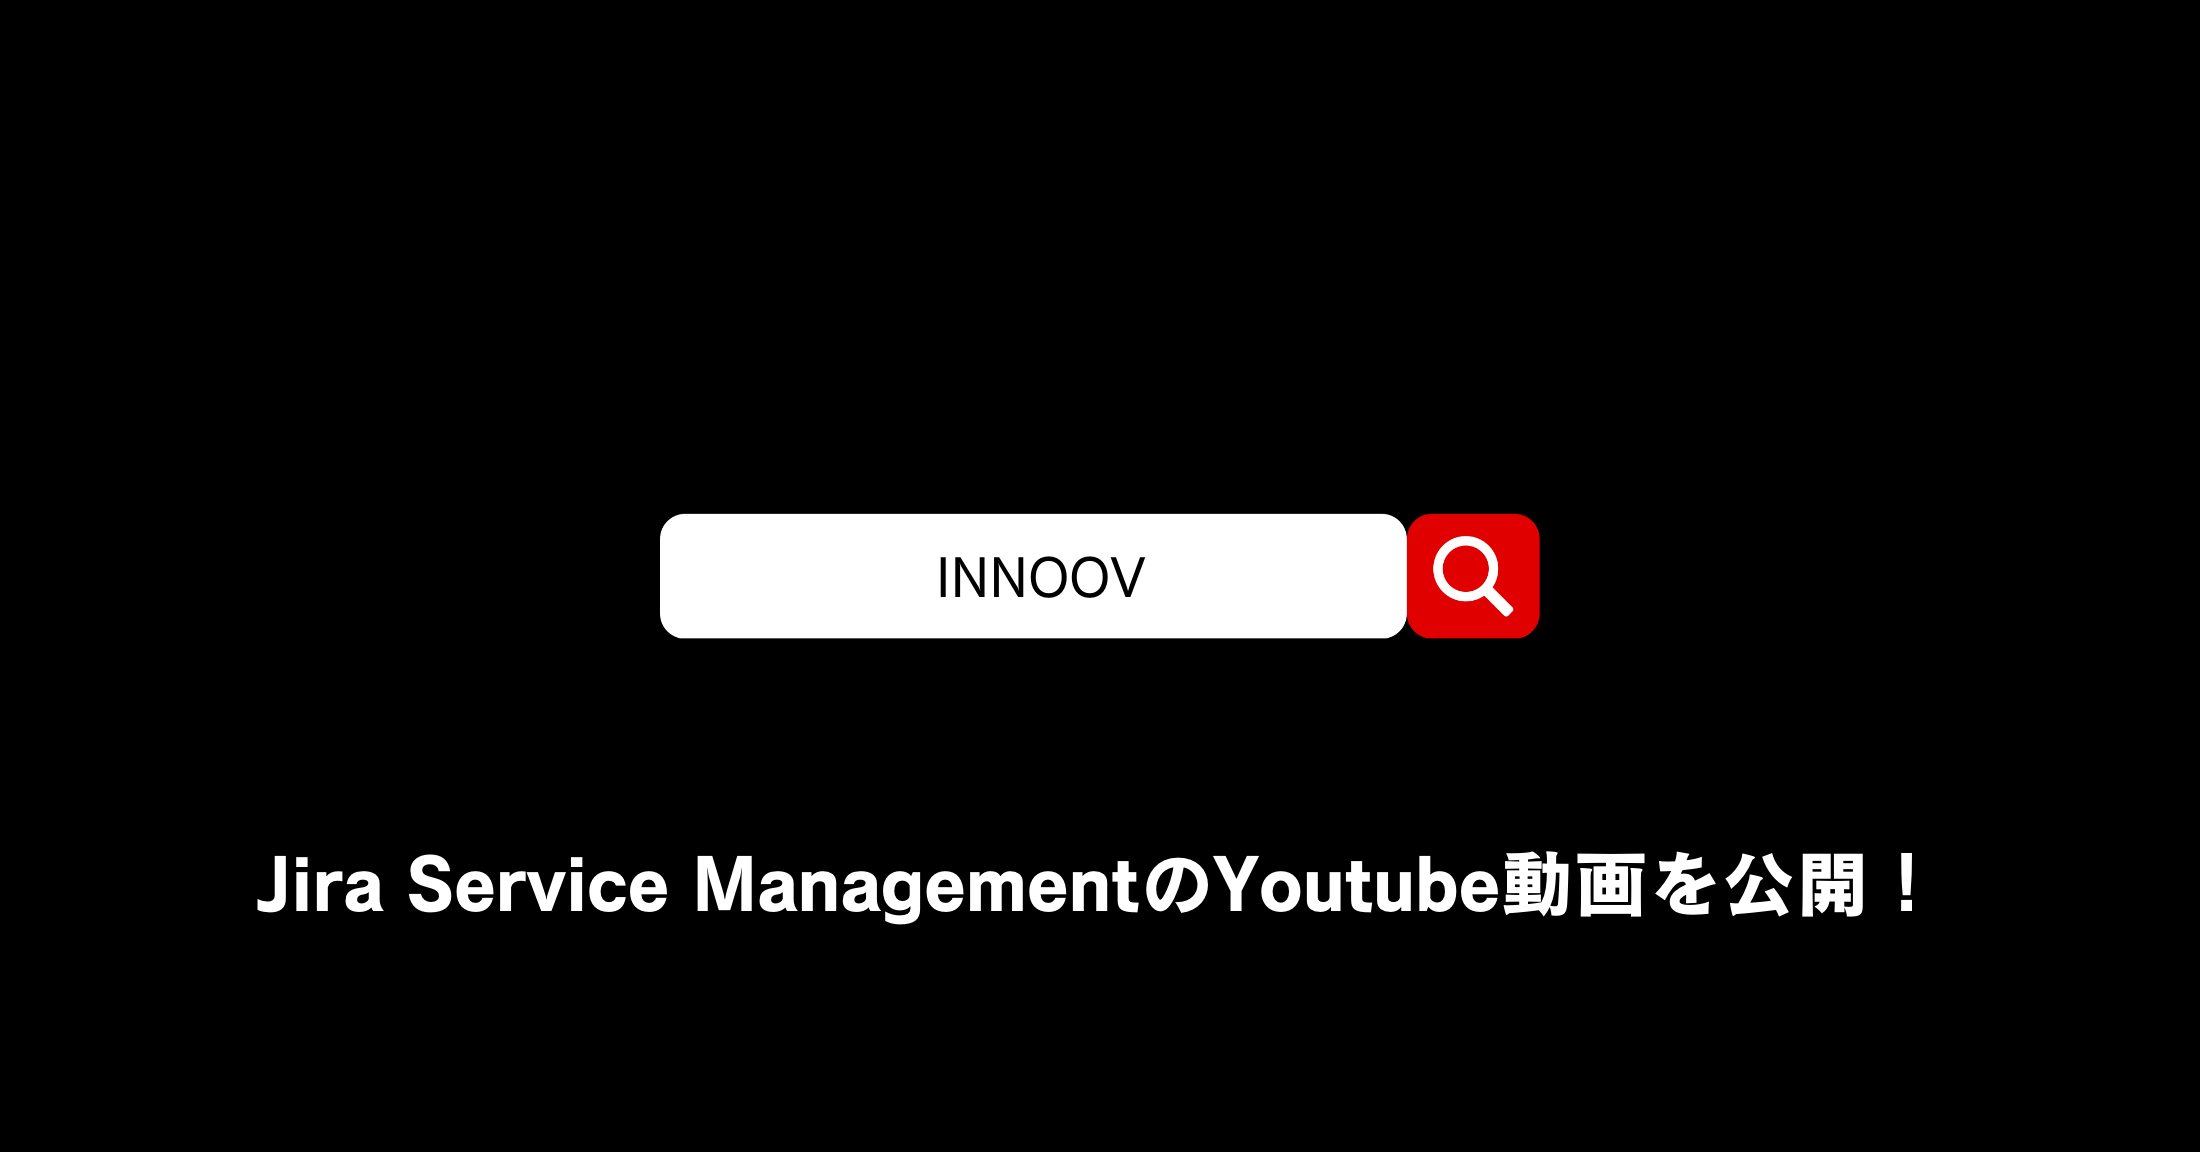 デモ動画付き！Jira Service ManagementのYoutube動画を公開しました